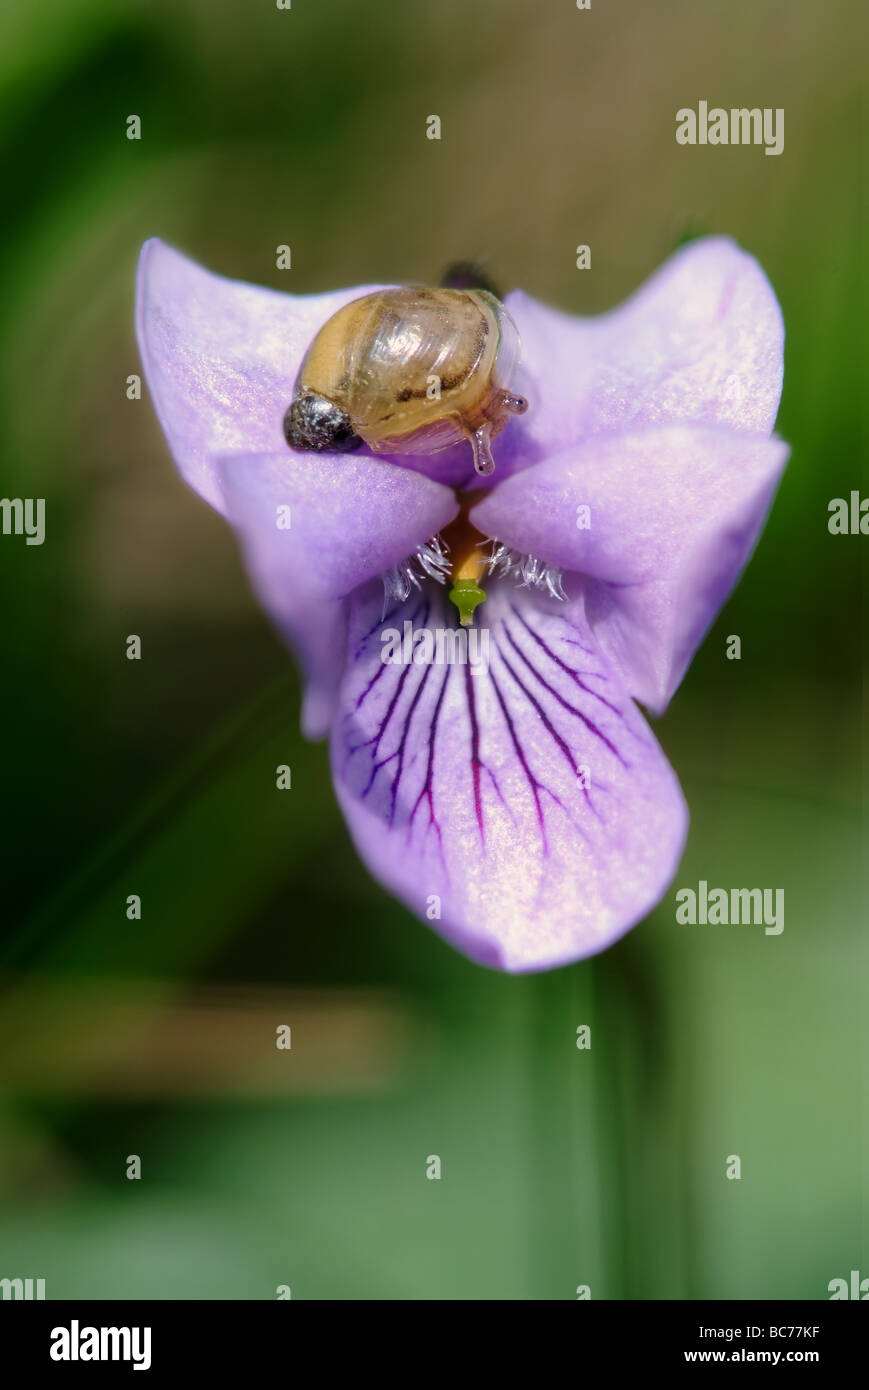 Snail on dog violet flower ( Viola canina) Stock Photo